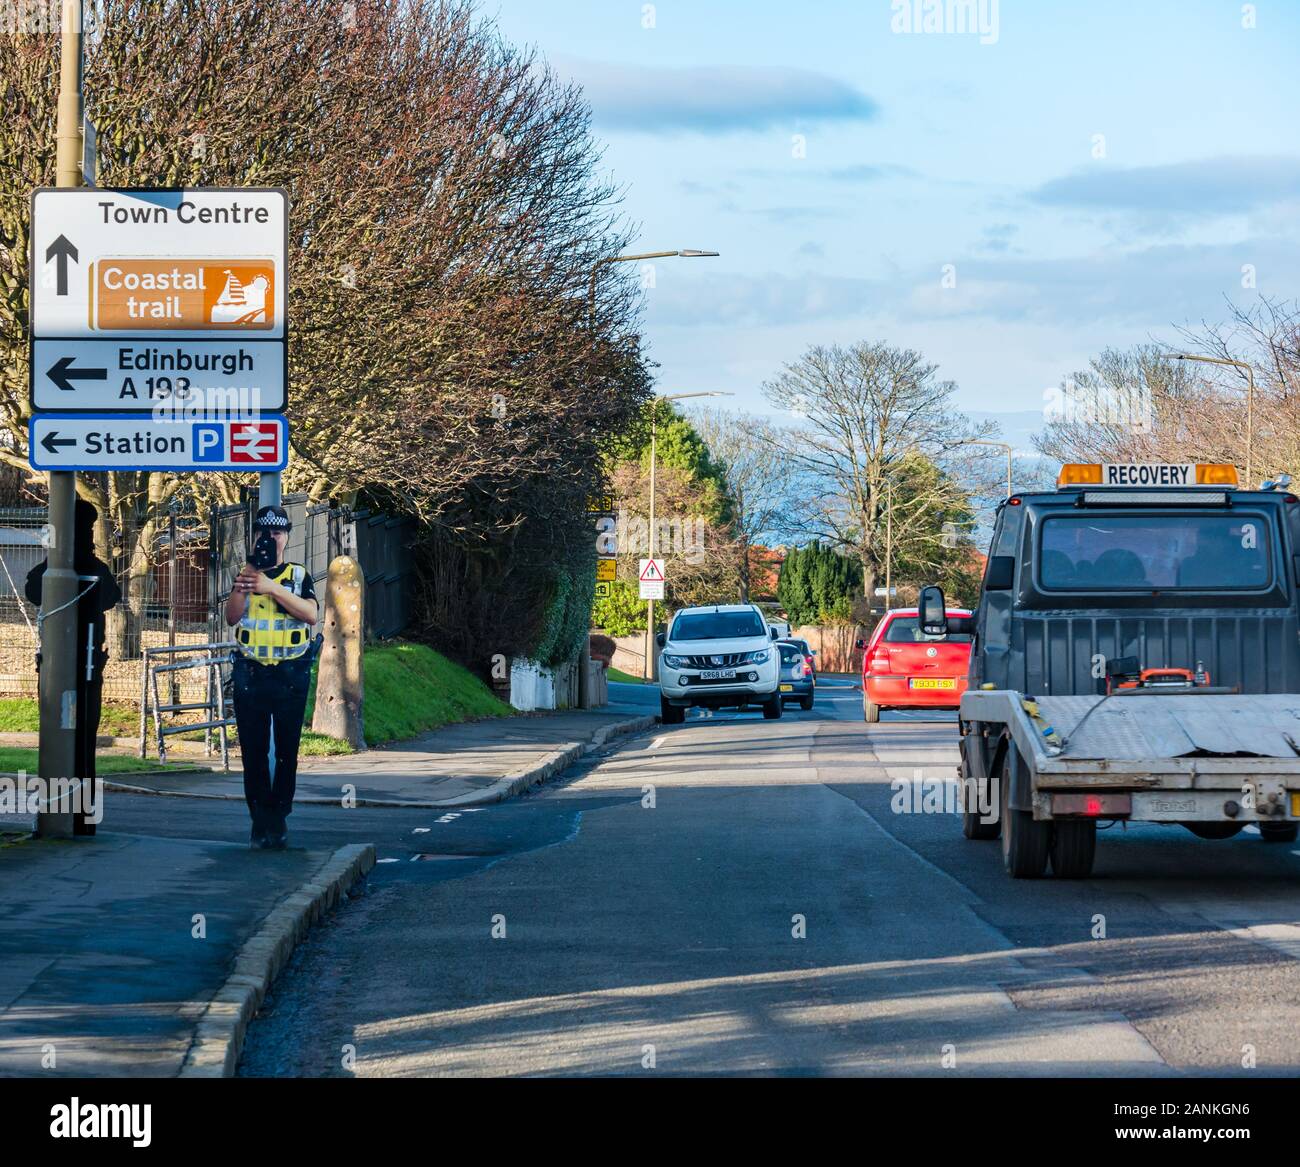 Taglio di cartone del traffico poliziotta con la velocità della telecamera in strada, North Berwick, East Lothian, Scozia, Regno Unito Foto Stock